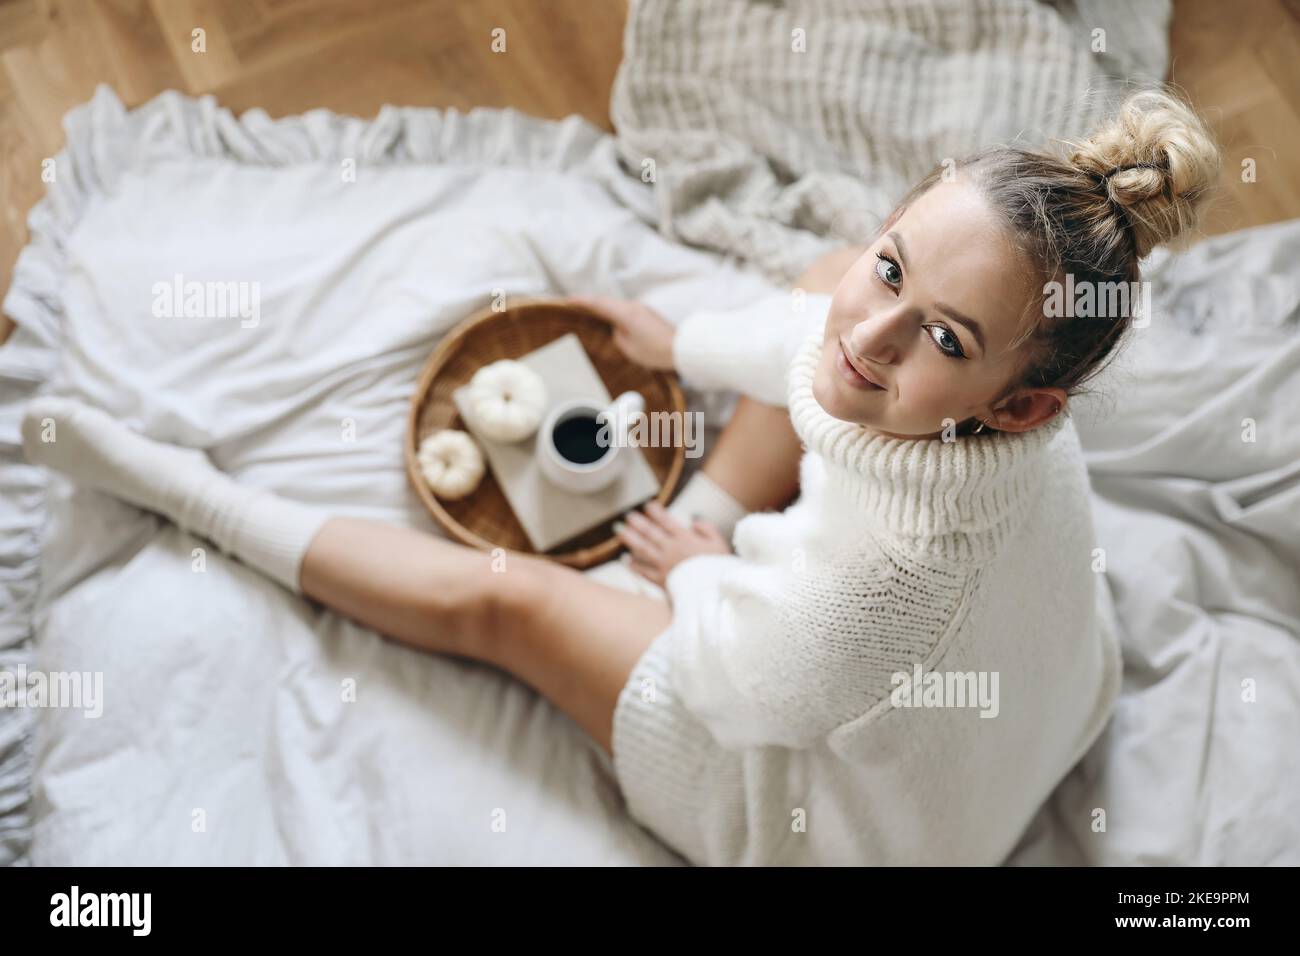 Schöne blonde kaukasische Mädchen, junge Frau in weißen Strickpullover, Socken halten Tasse Kaffee. Frühstück im Winter, Herbst im Bett. Weidenschale, weiß Stockfoto